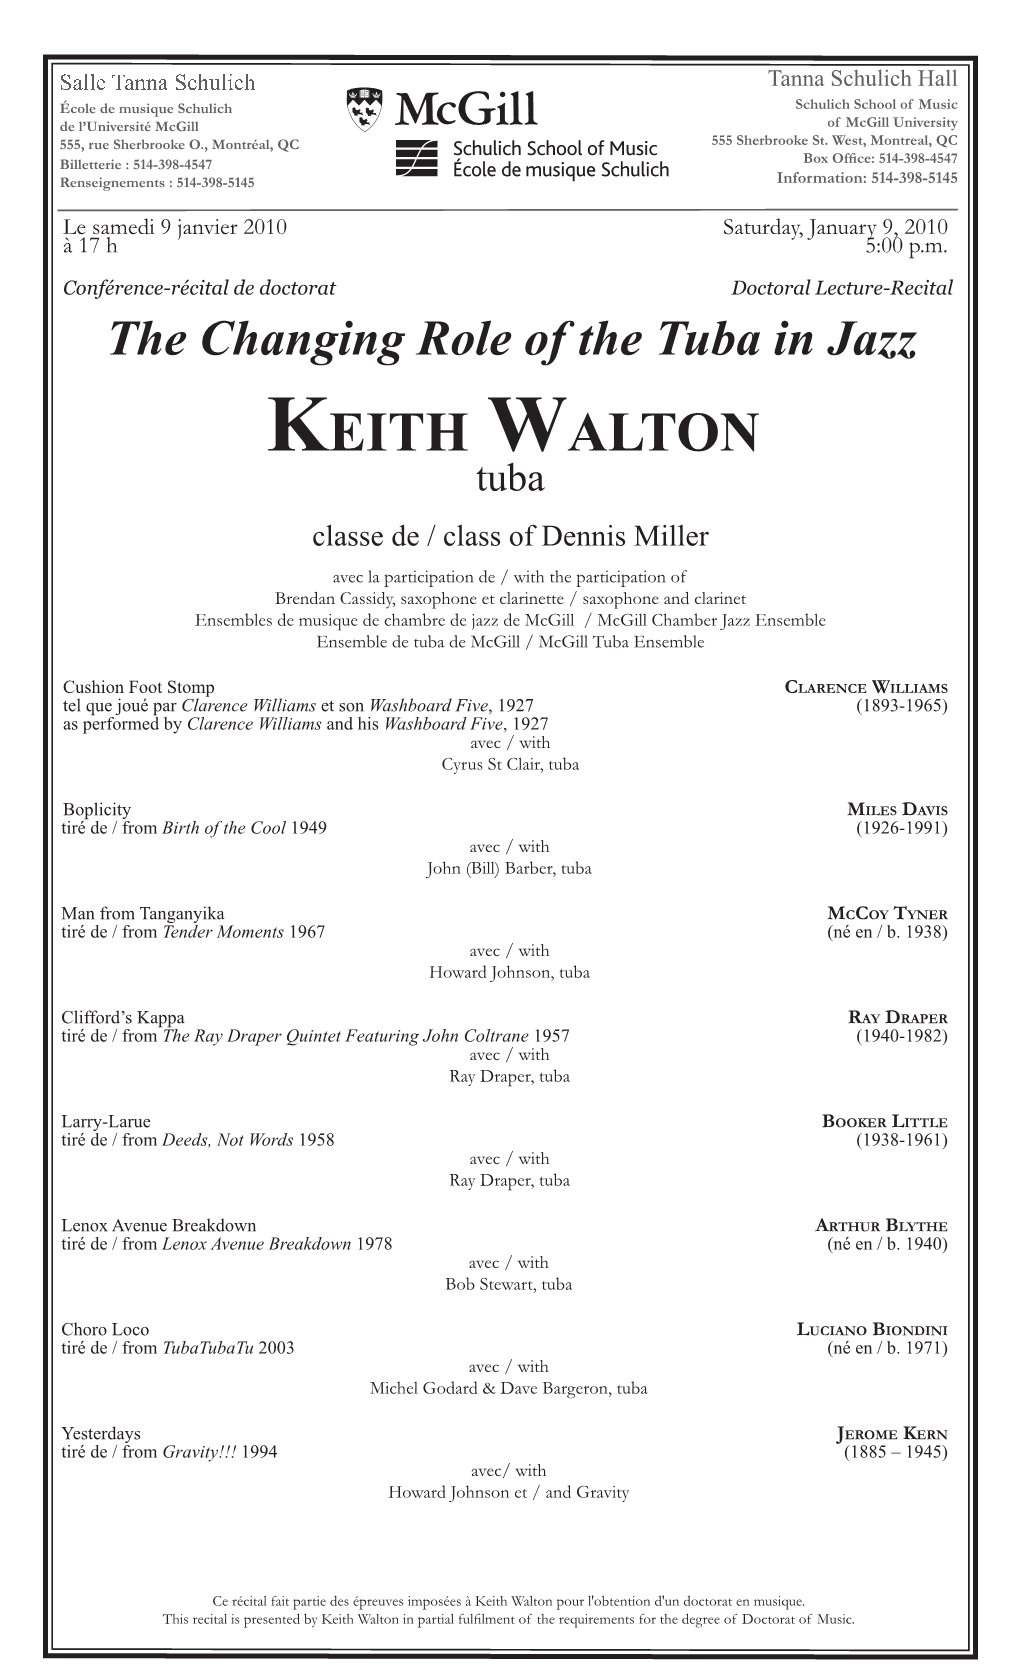 Keith Walton